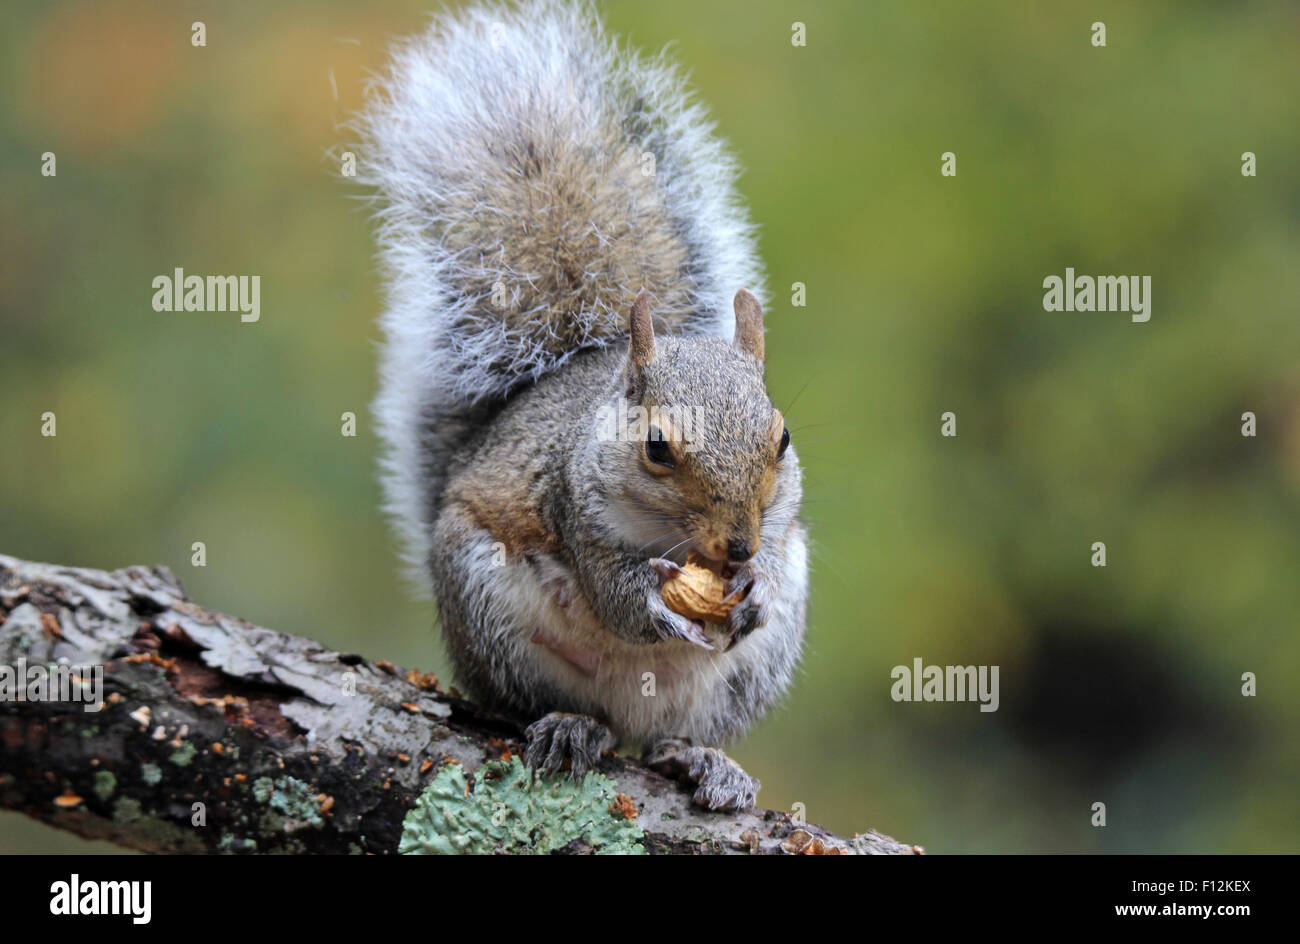 Un écureuil gris (Sciurus carolinensis) assis sur une branche à l'automne, manger une noix. Banque D'Images